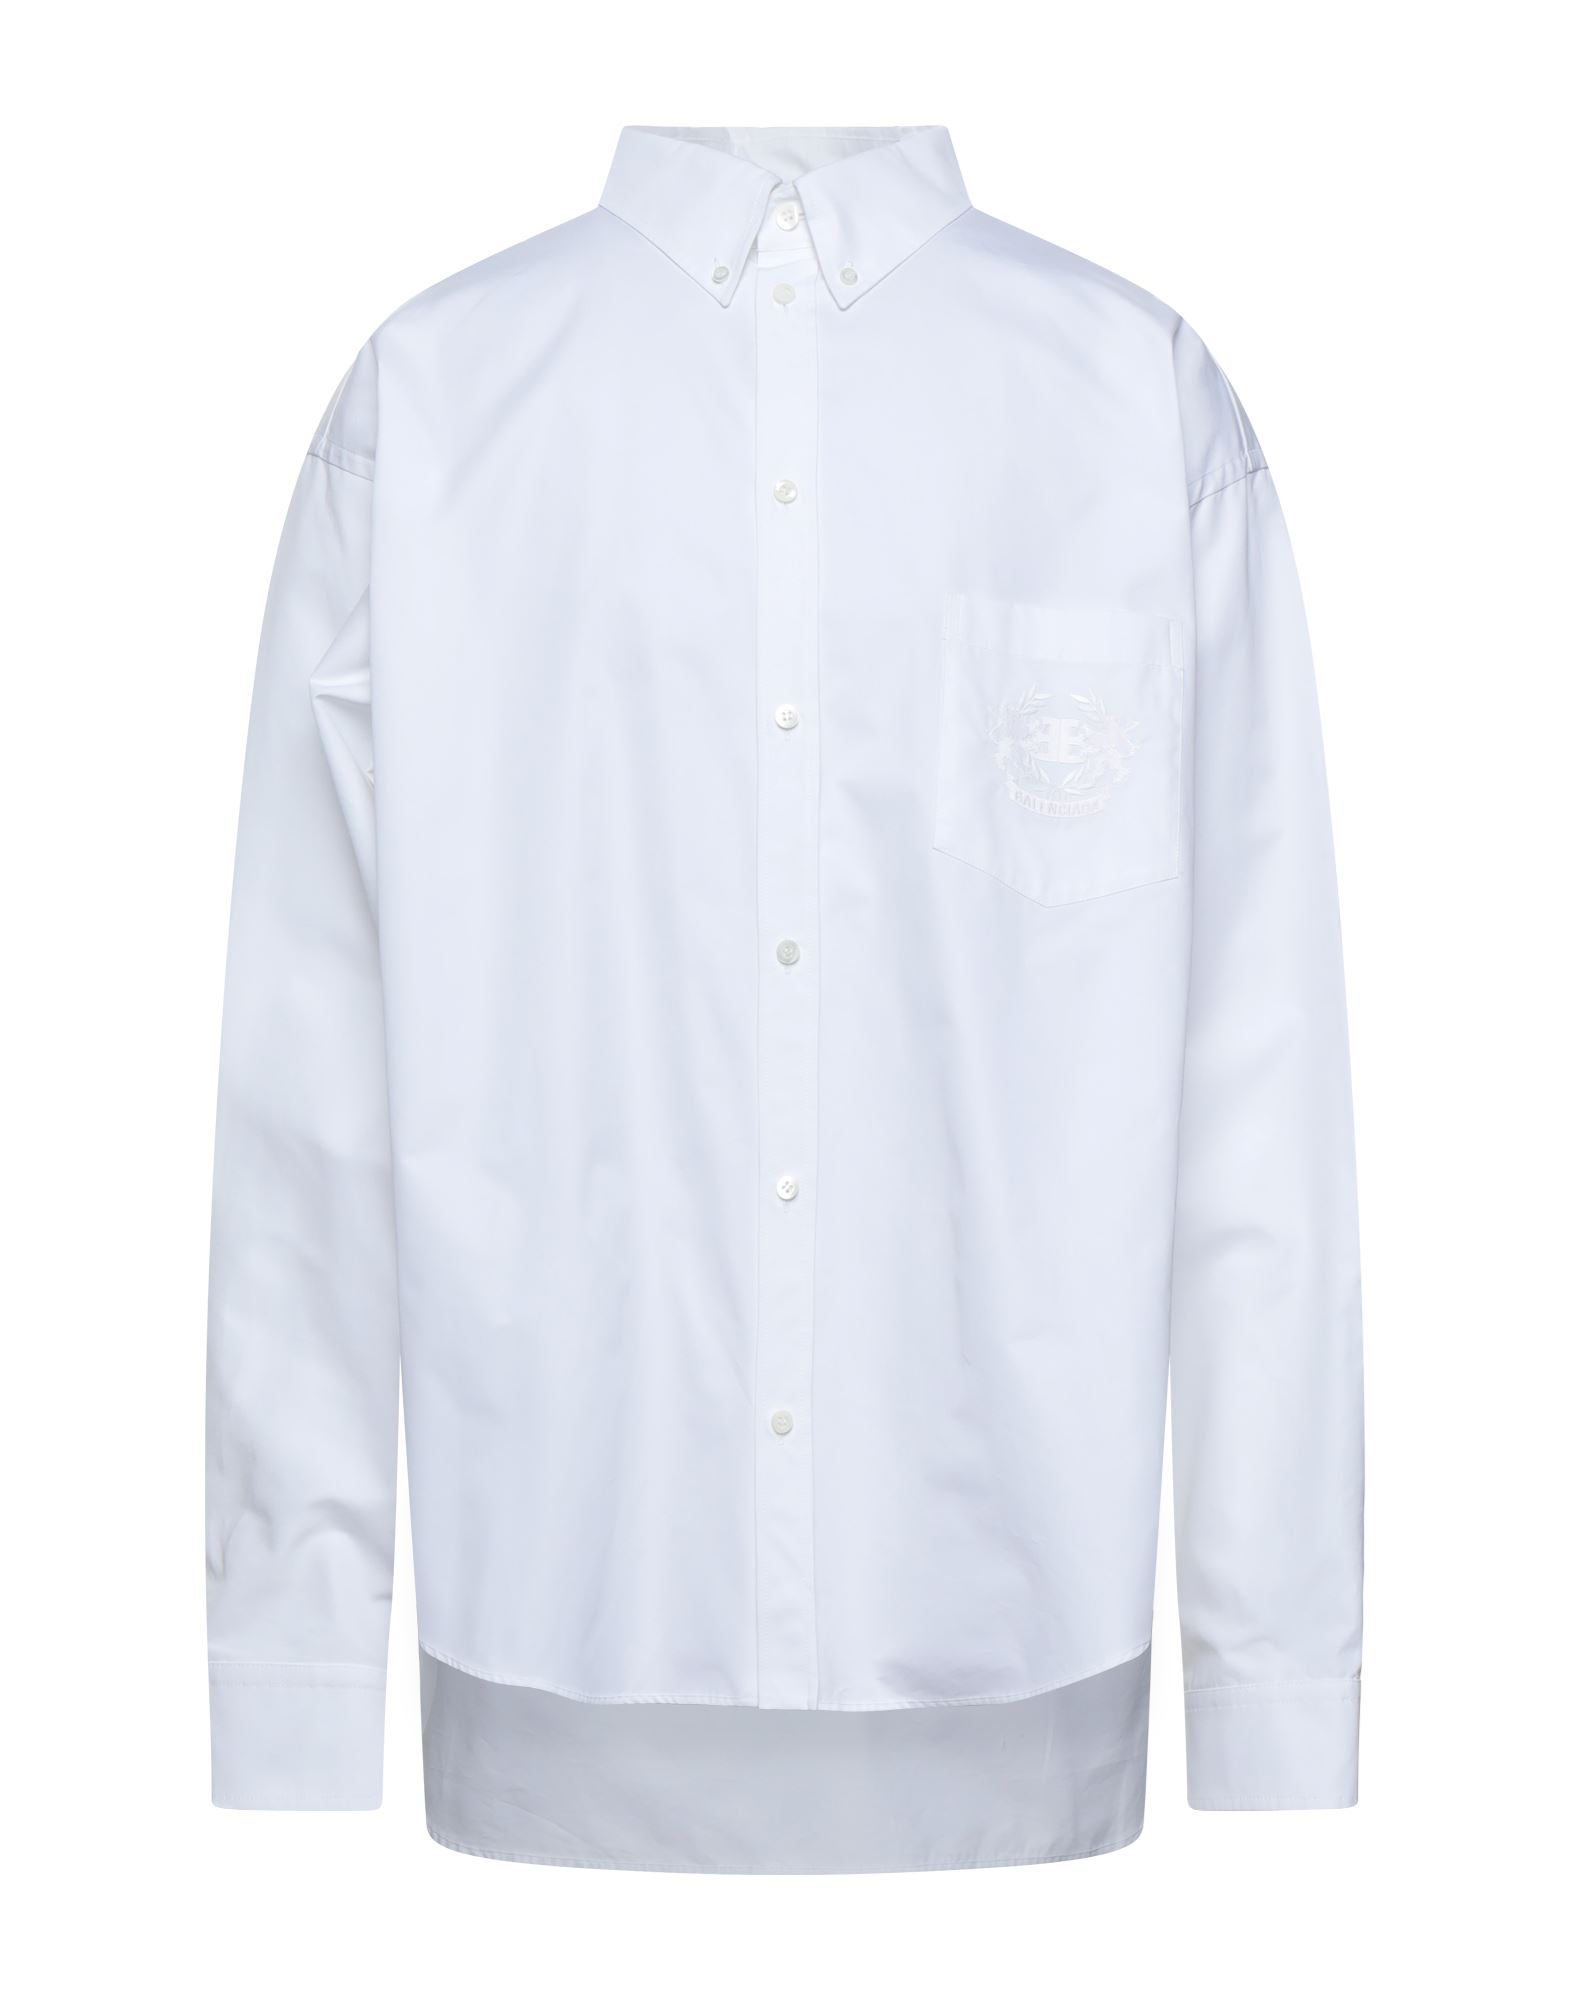 バレンシアガ(BALENCIAGA) メンズシャツ・ワイシャツ | 通販・人気 